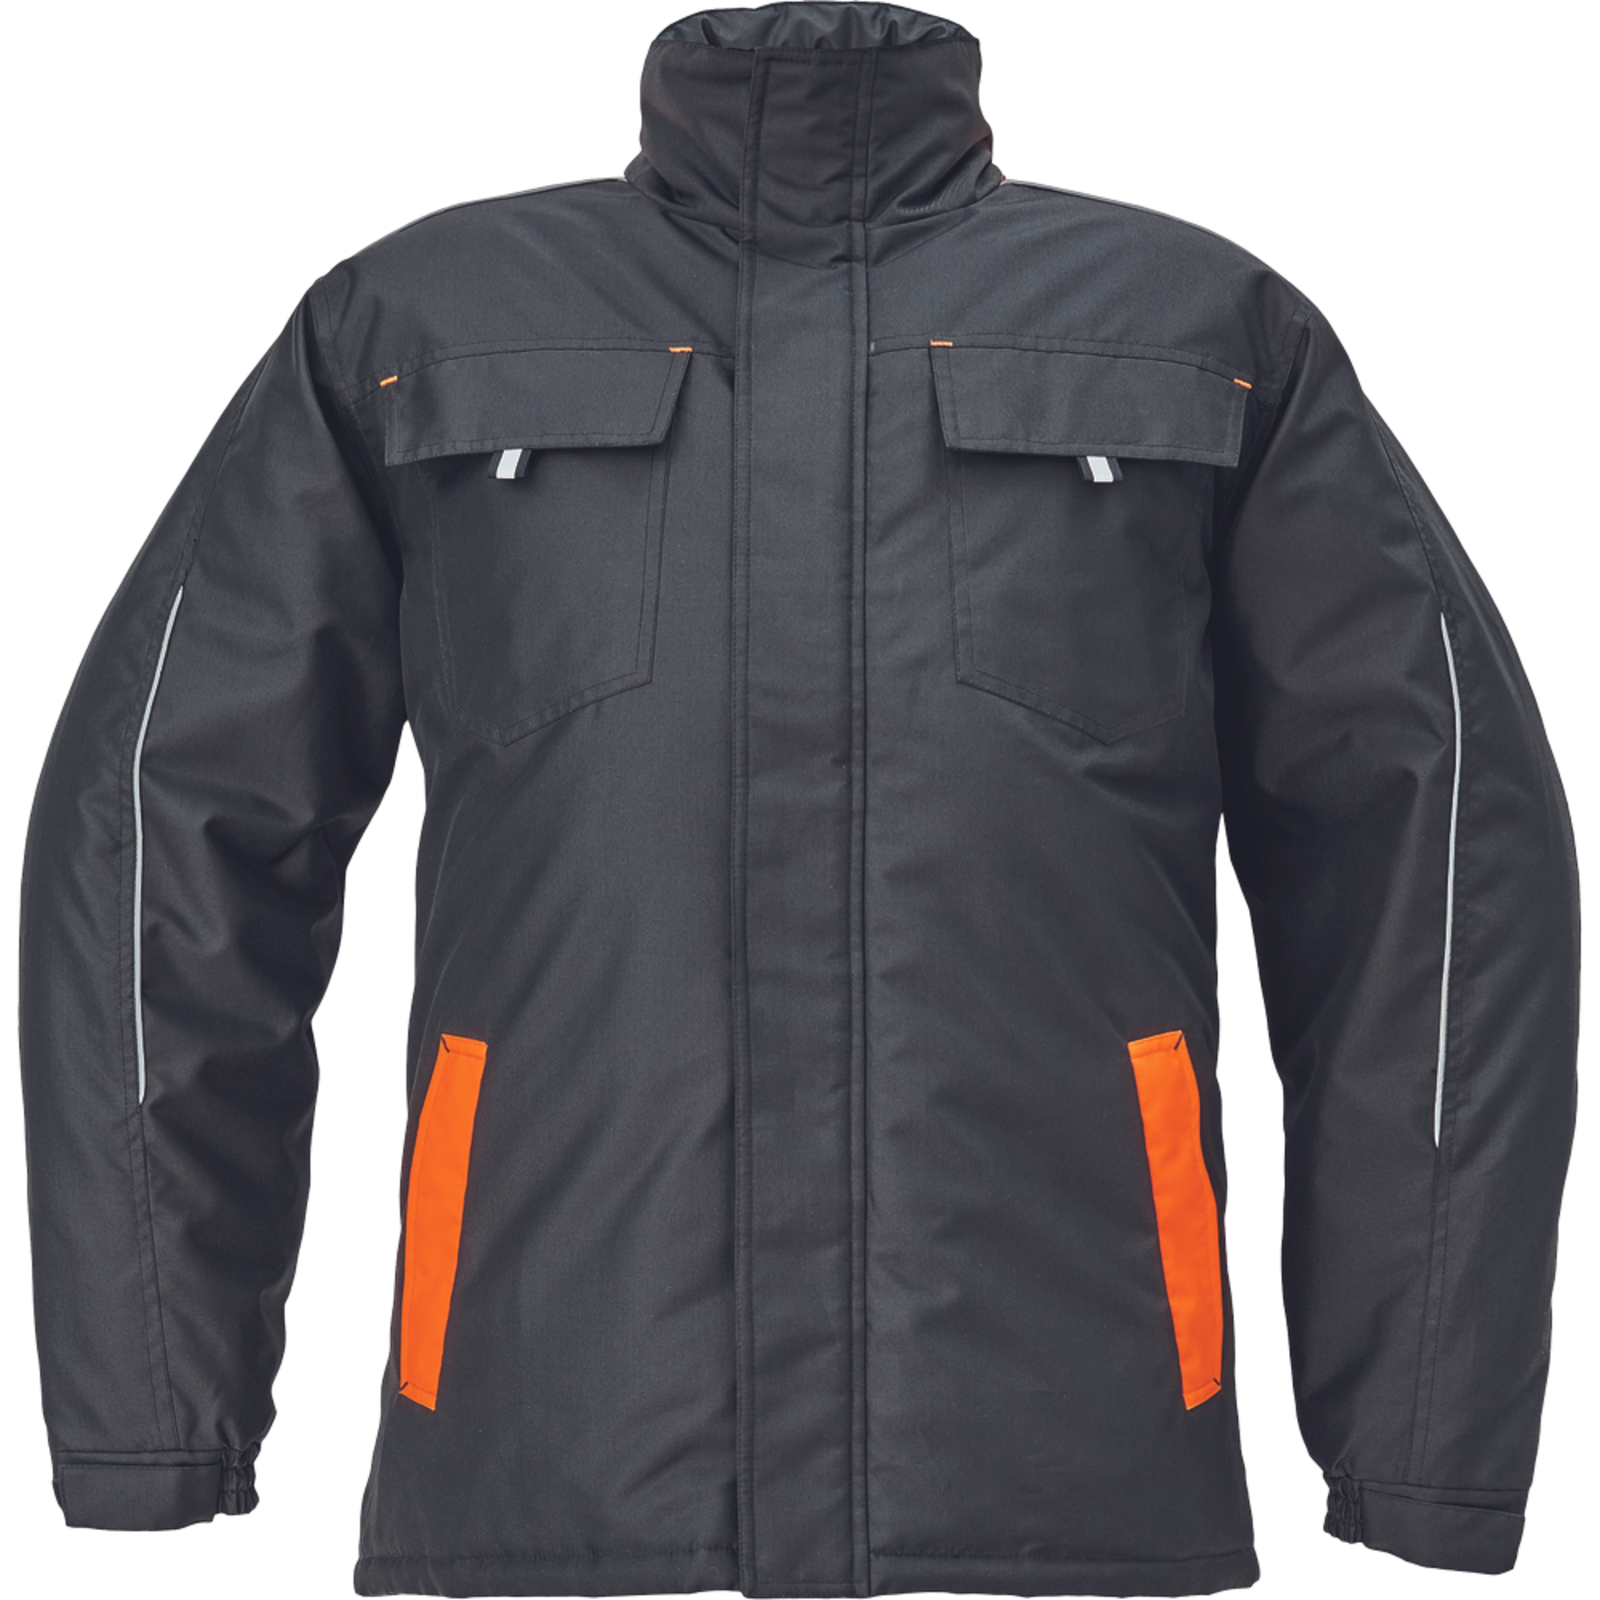 Zimná bunda Cerva Max Vivo pánska - veľkosť: S, farba: čierna/oranžová